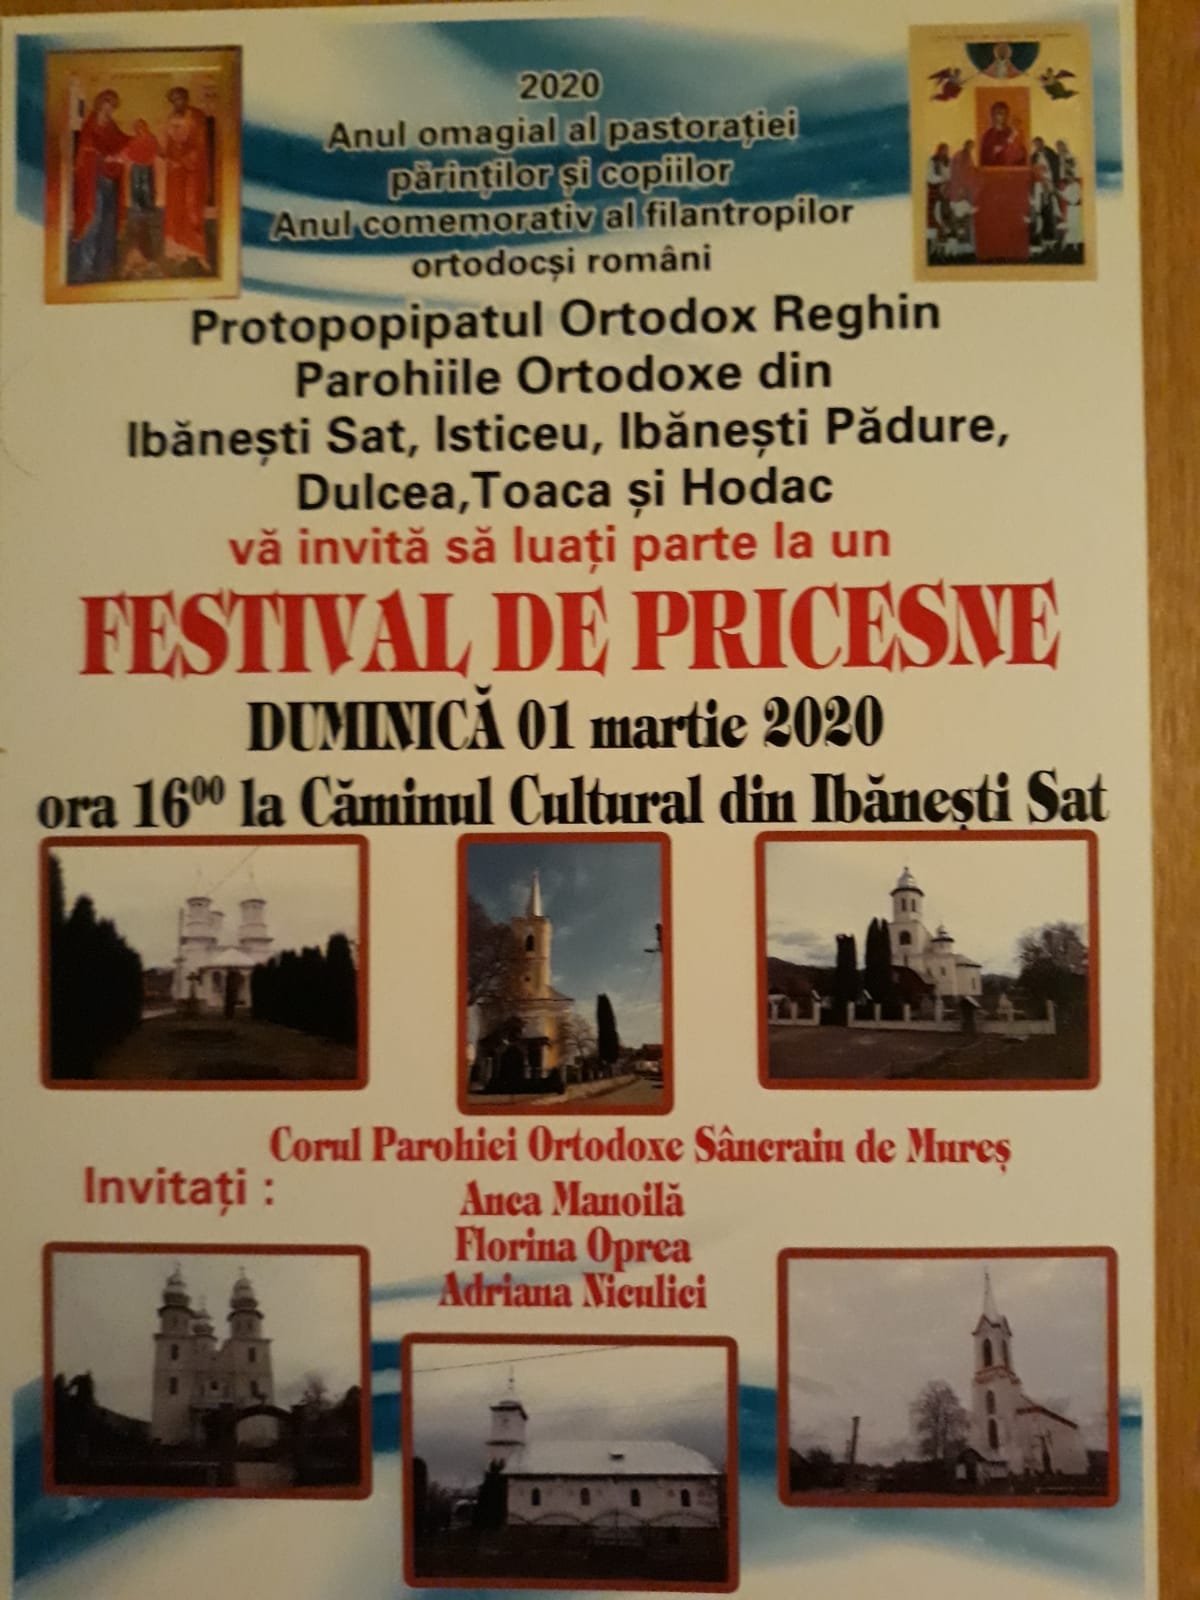 Festival de pricesne, 1 martie, Ibănești